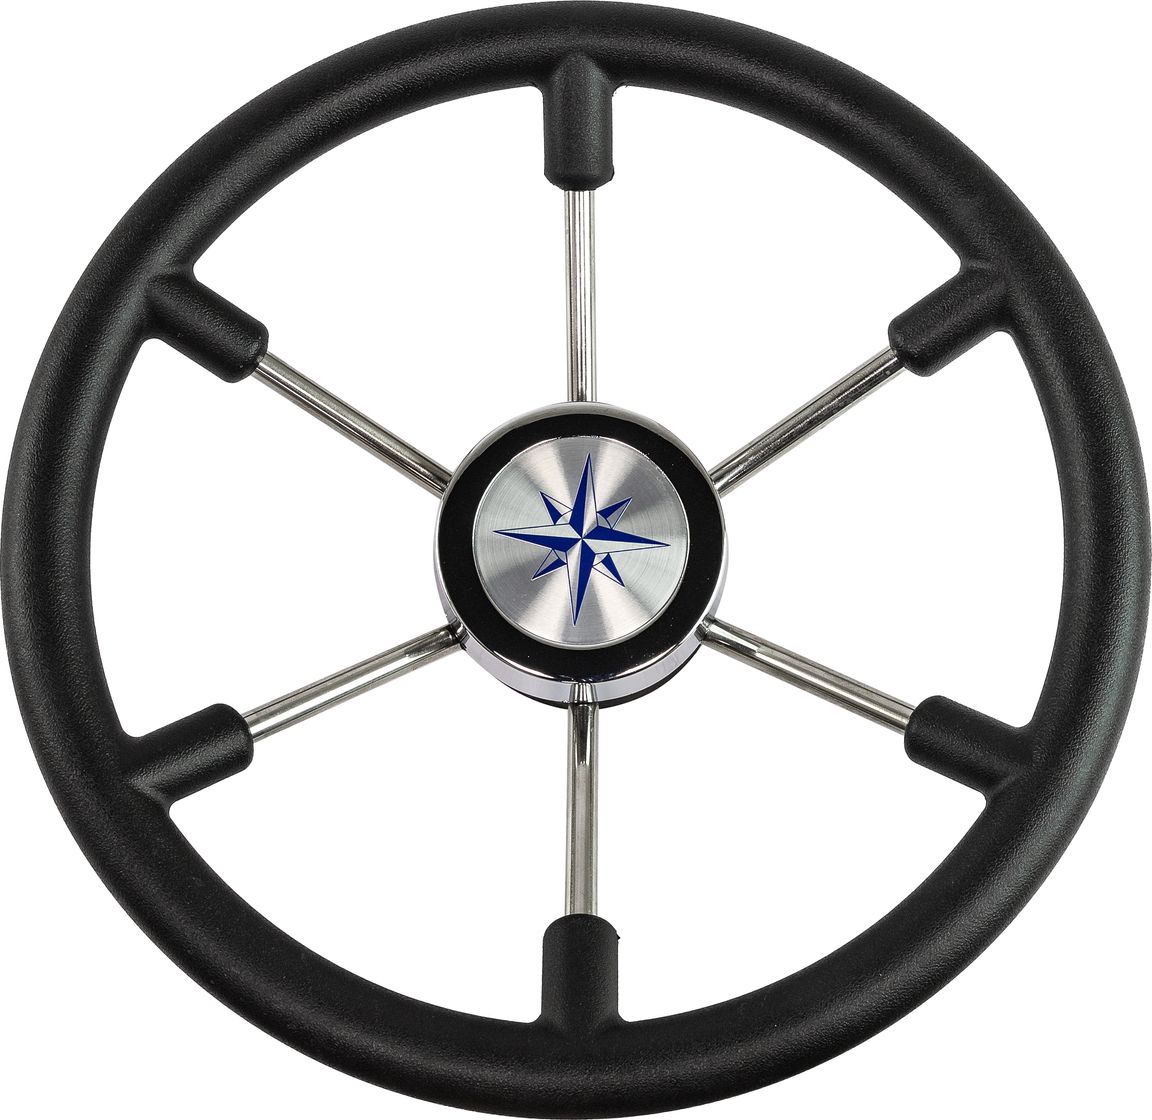 Рулевое колесо LEADER PLAST черный обод серебряные спицы д. 360 мм VN8360-01 рулевое колесо leader wood деревянный обод серебряные спицы д 360 мм vn7360 33